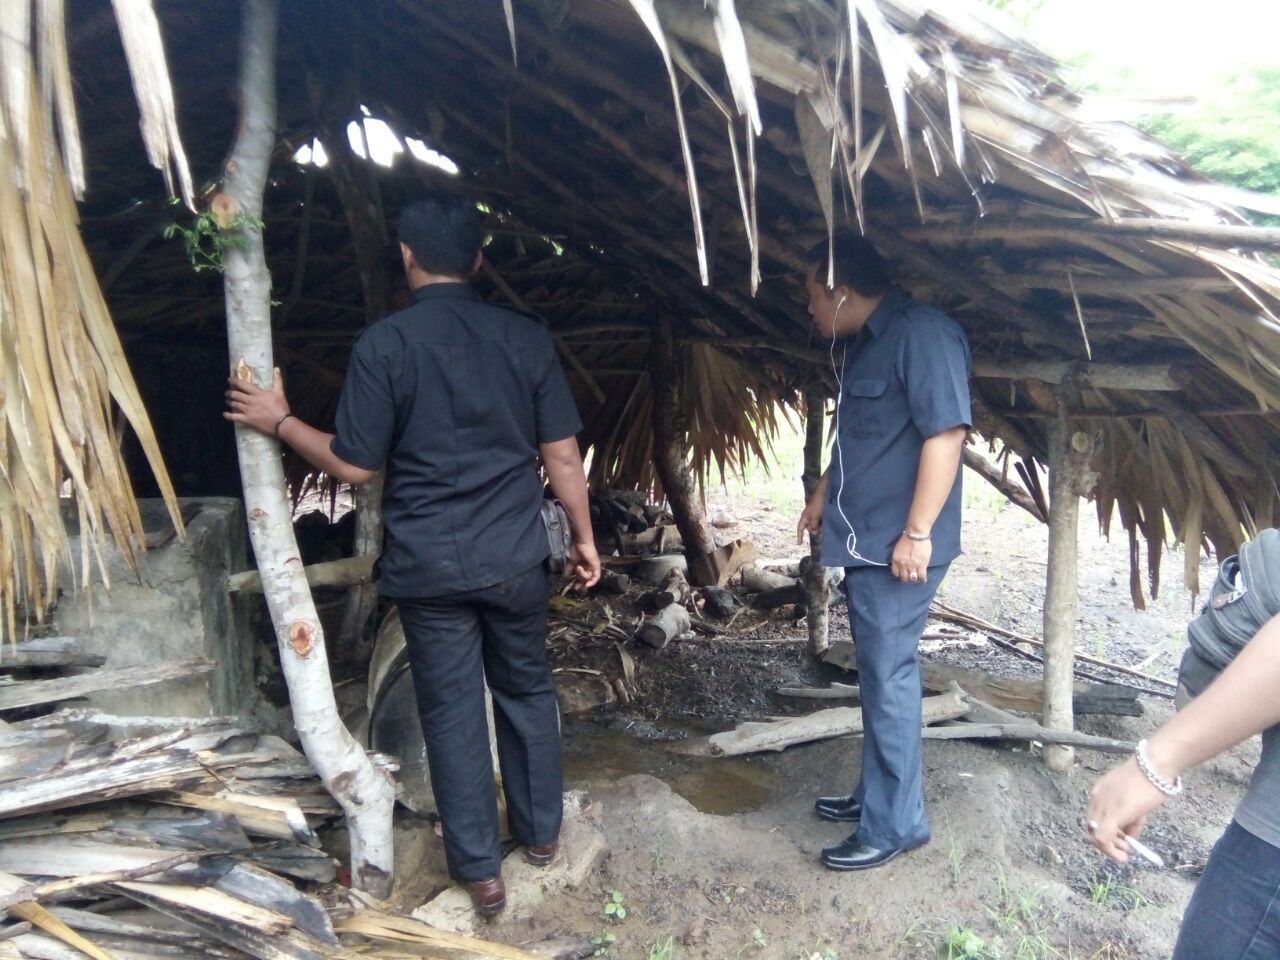 Tim Satuan Intelkam Polres Rote Ndao gerebek lokasi penyulingan sopi